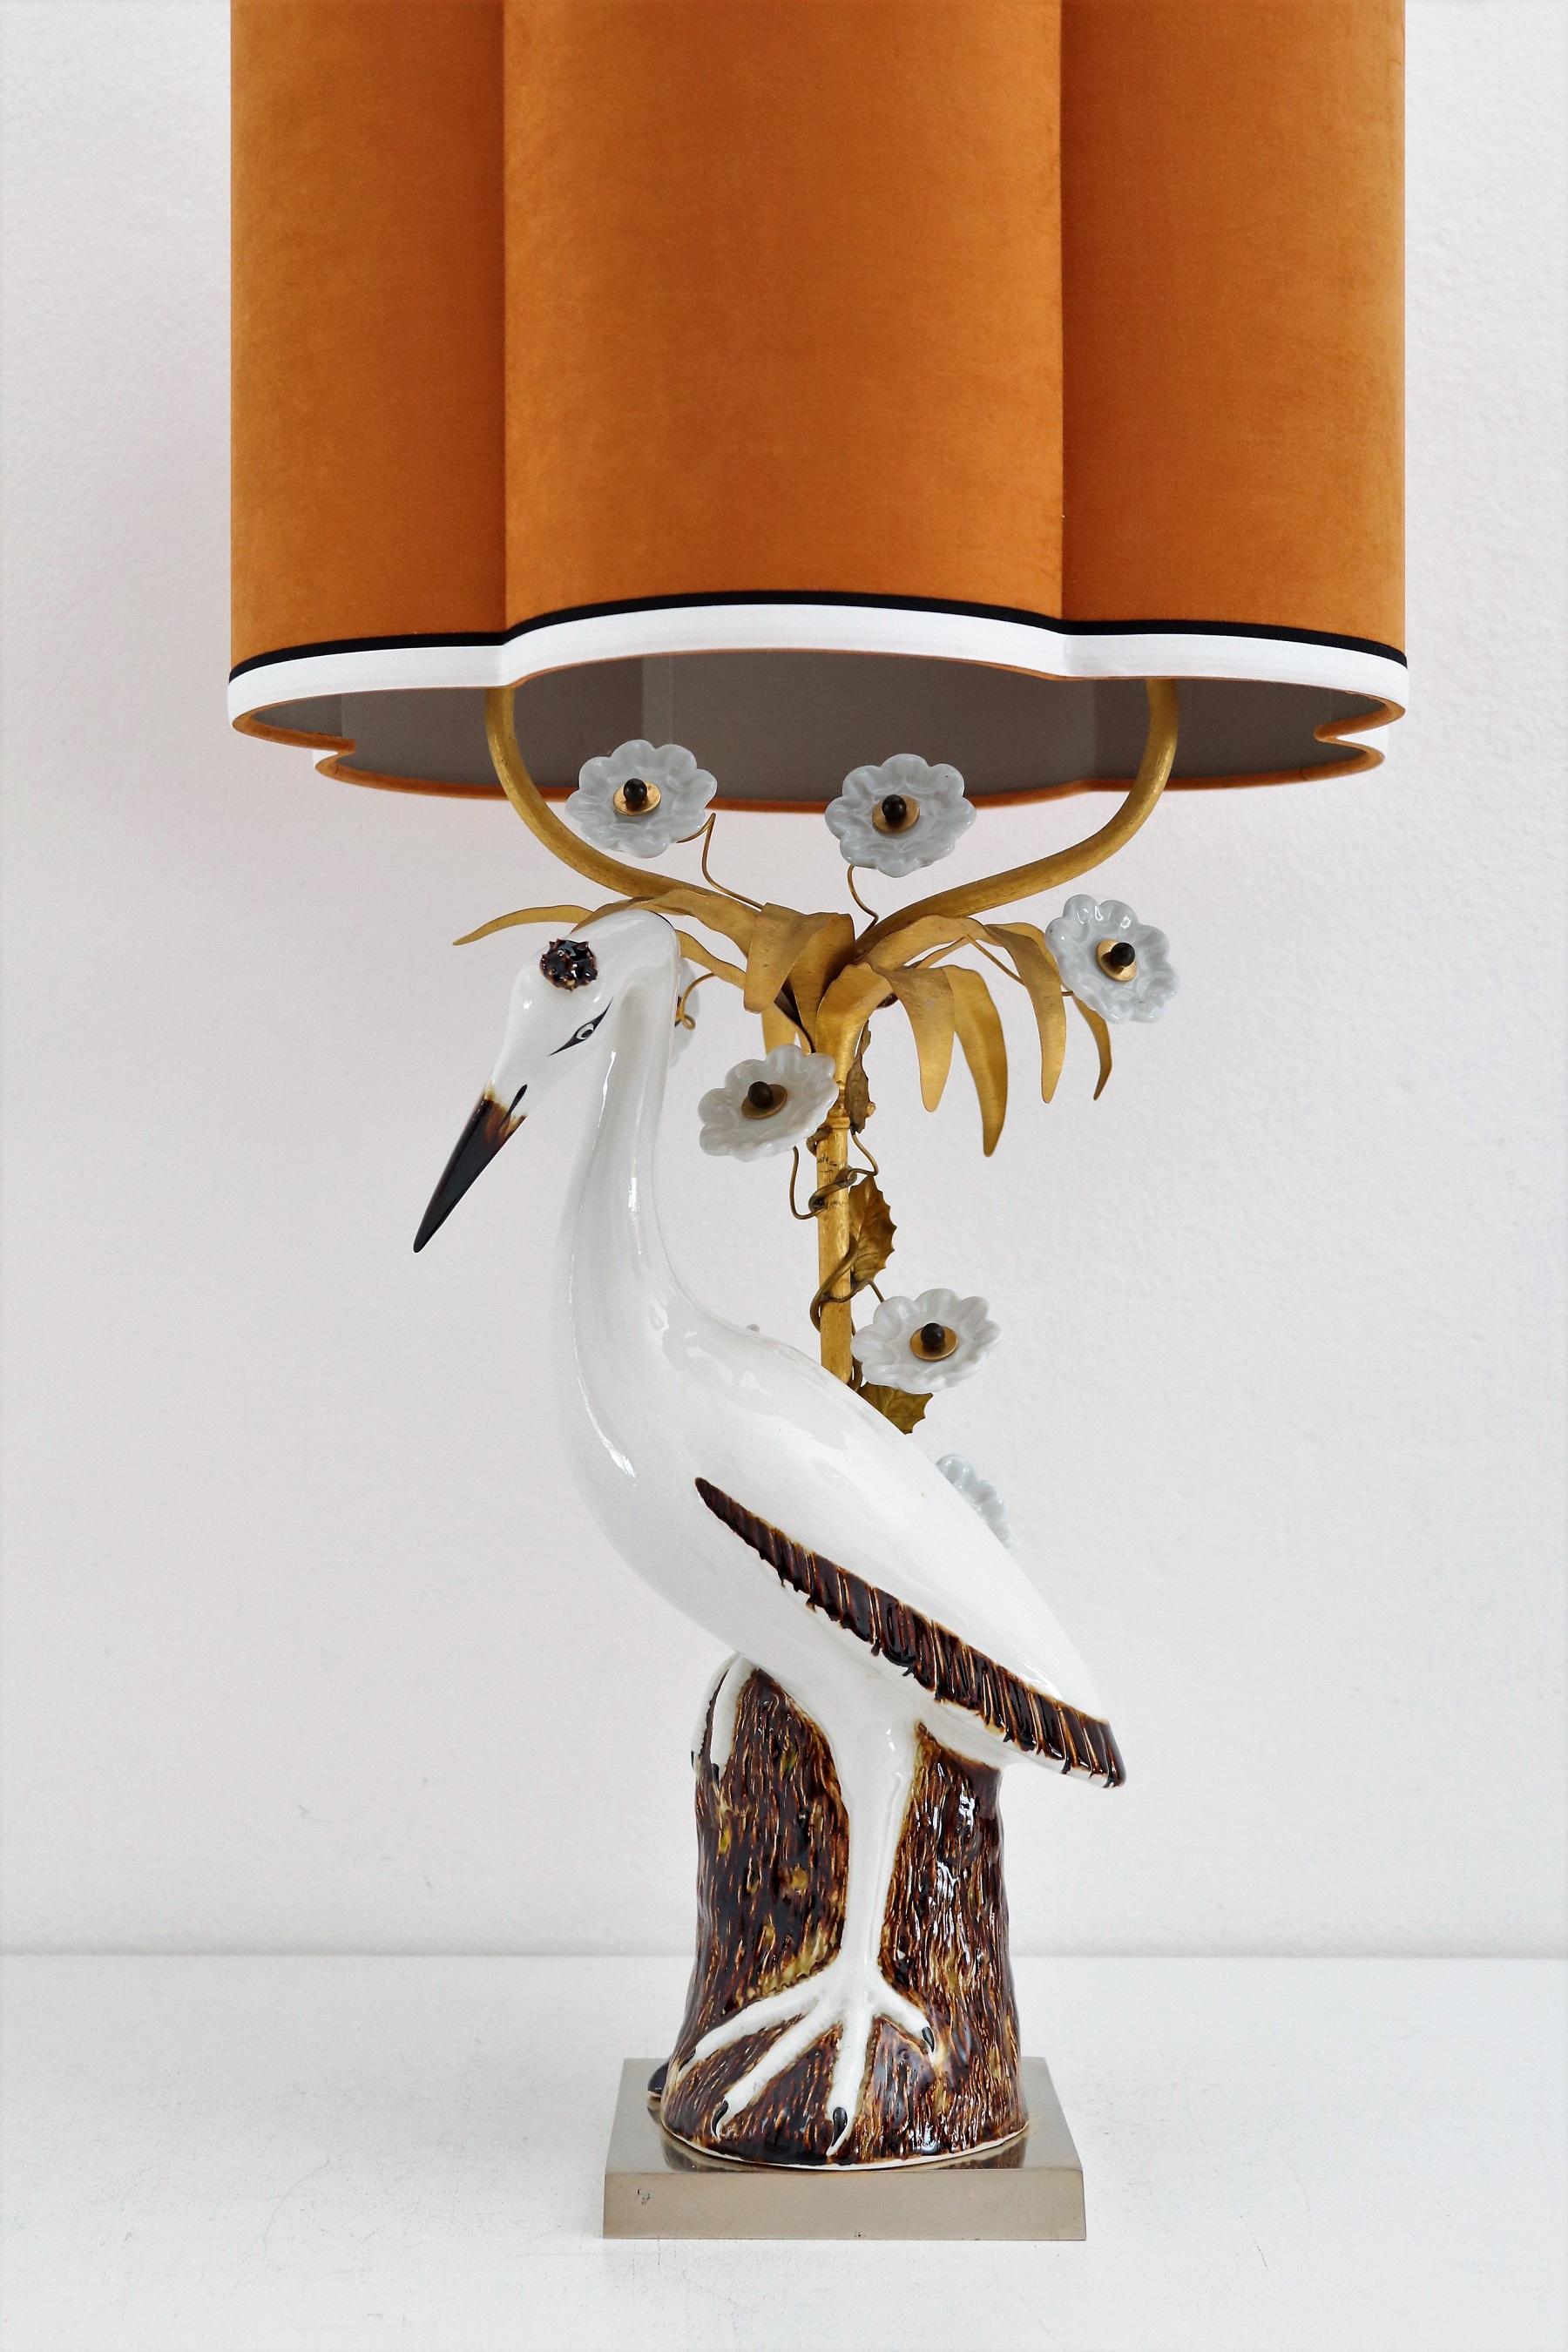 Magnifique lampe de table en forme de grue ou de héron, fabriquée en porcelaine peinte à la main.
Fabriqué en France dans les années 1960 et 1970.
La figurine en porcelaine de type grue - héron est posée sur un socle en métal doré devant une barre